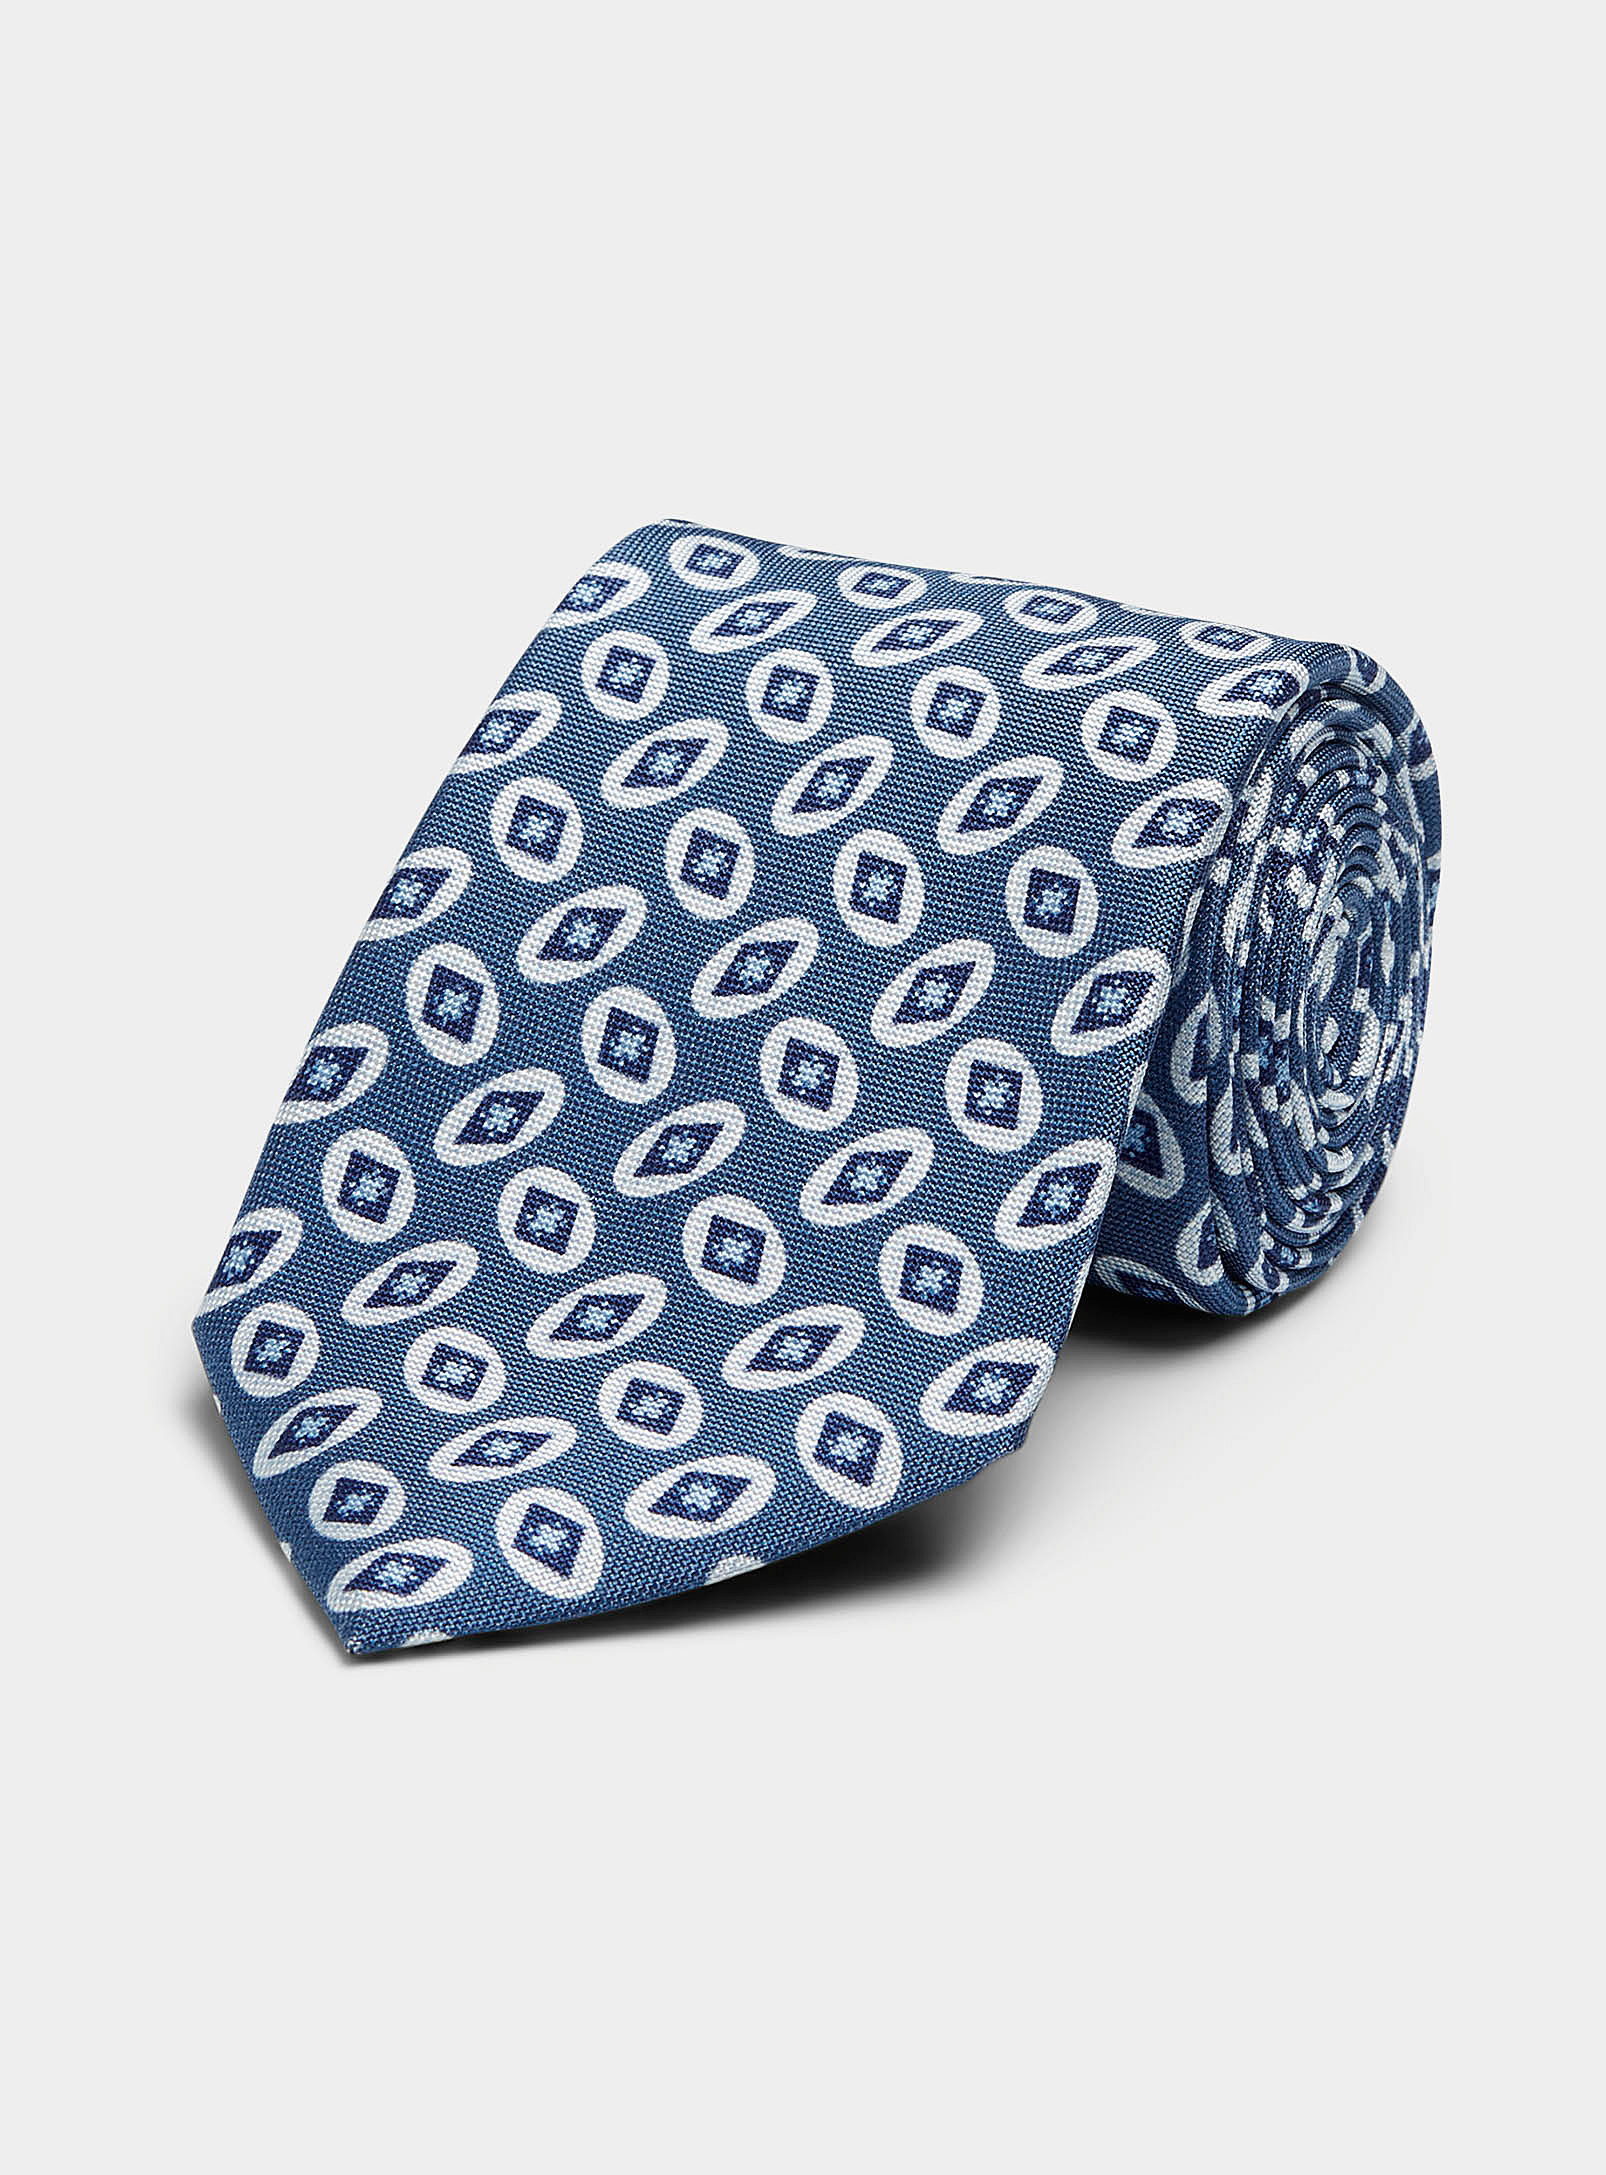 Blick - La cravate bleue ocelles géo